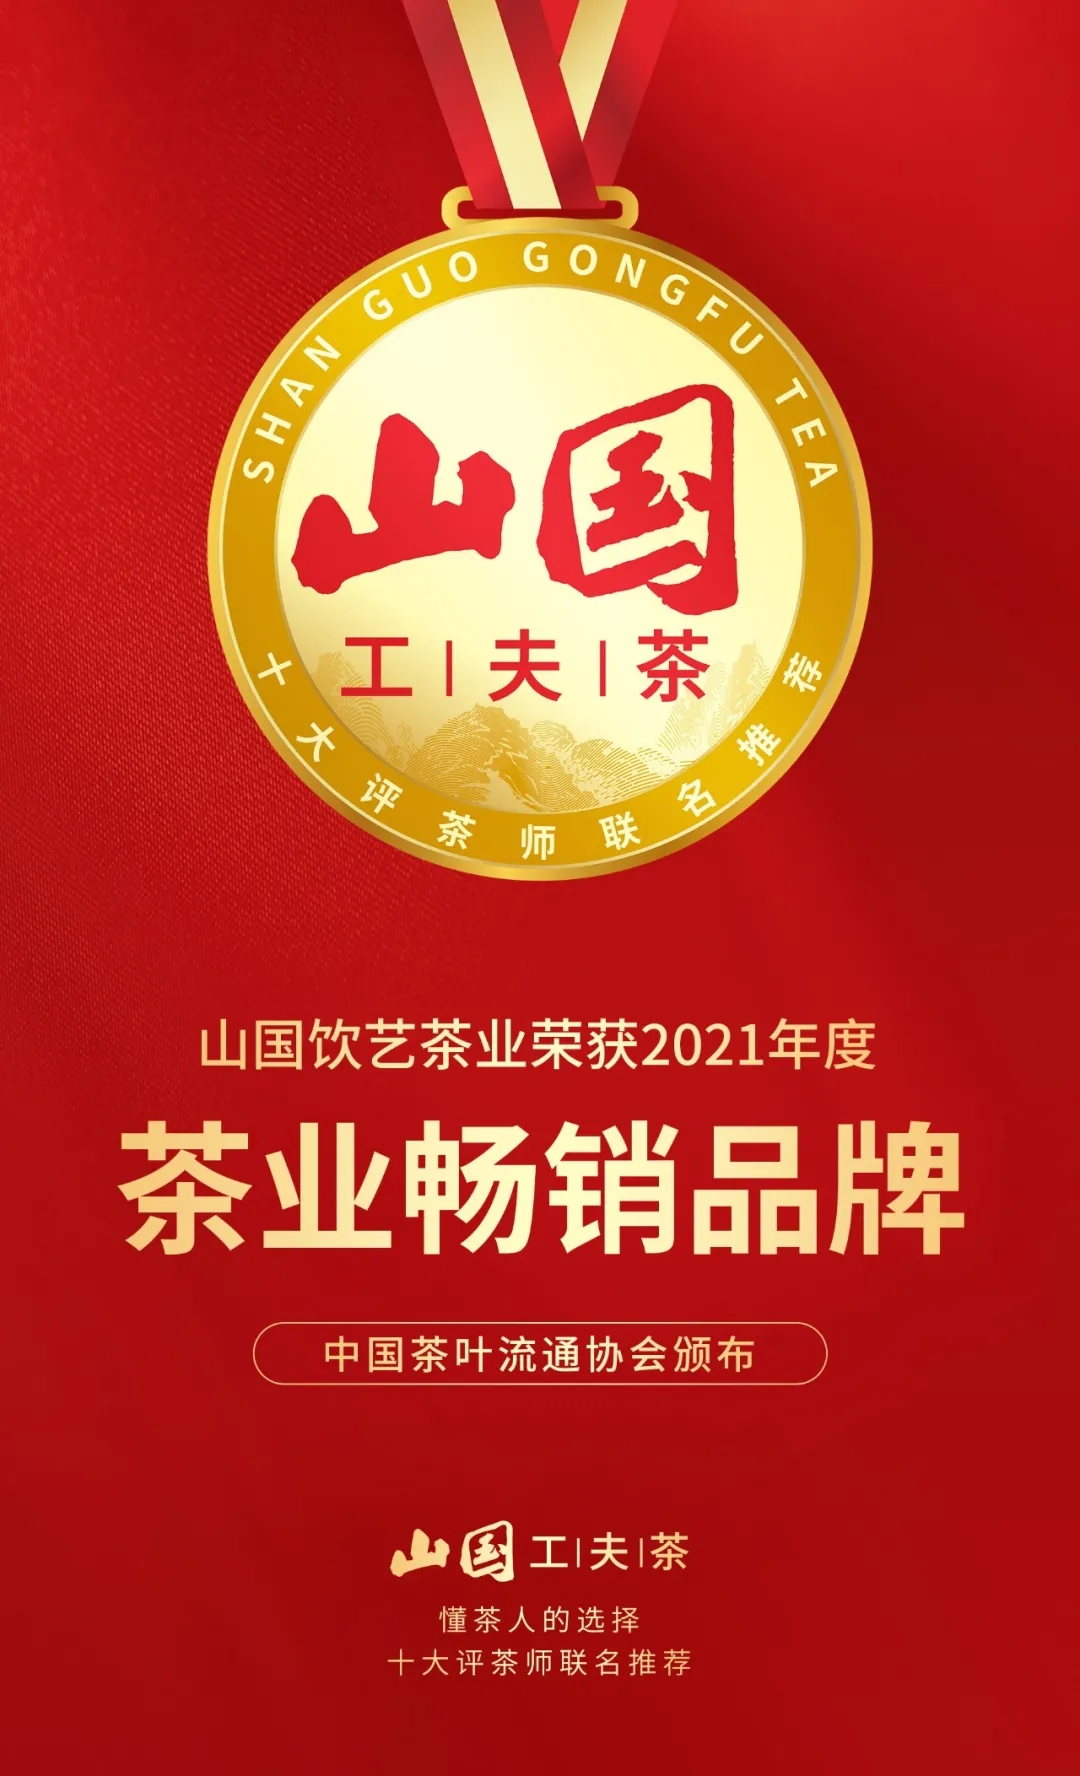 山国饮艺荣获“2021年度中国茶业百强企业”及“茶业畅销品牌”